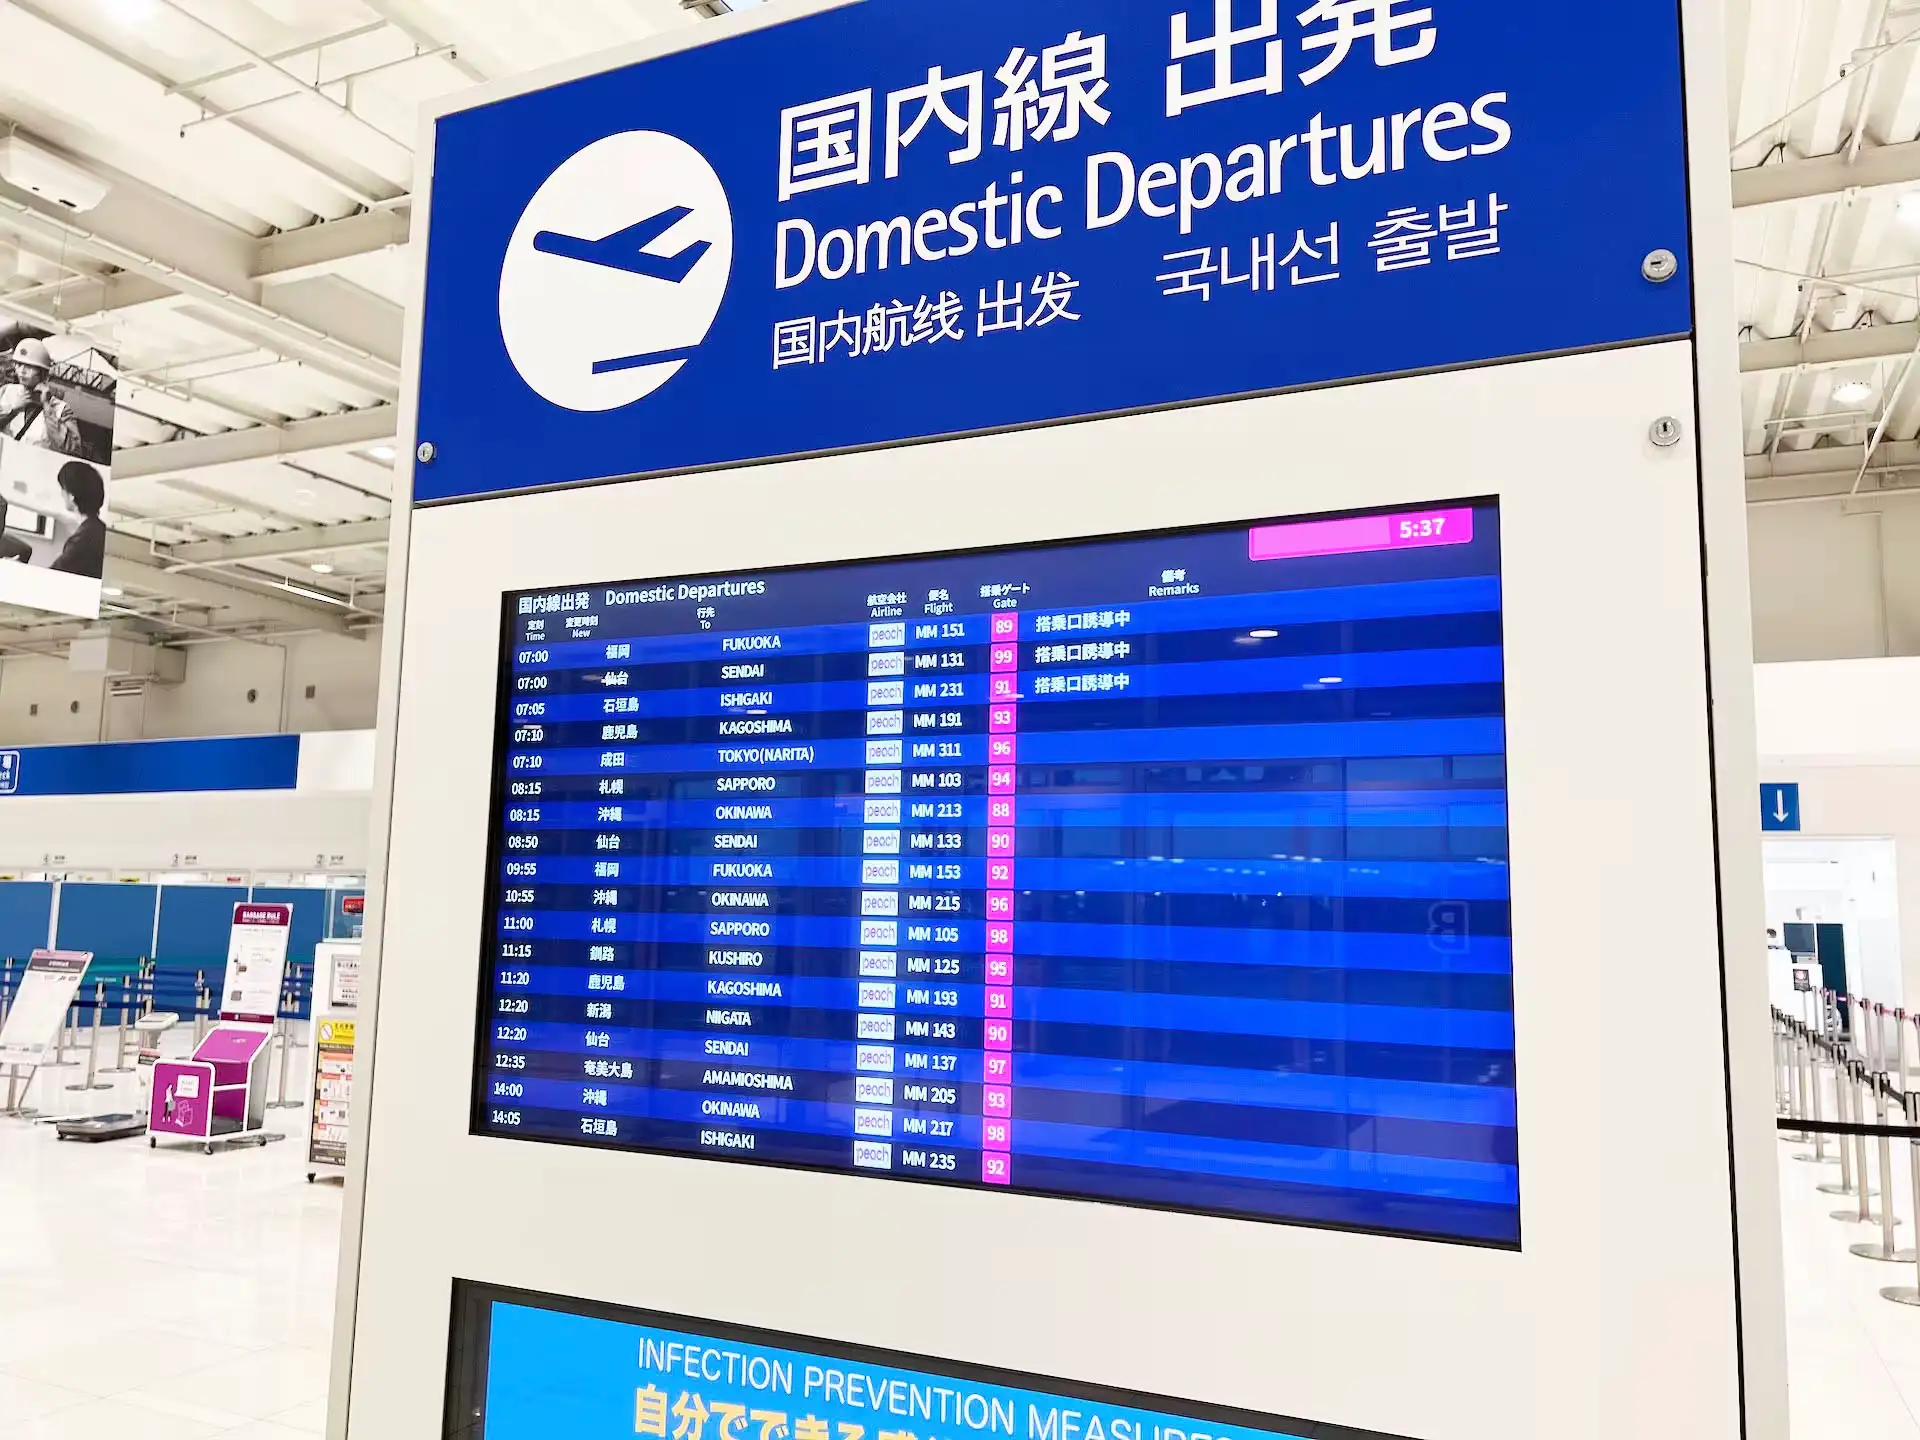 関西空港第二ターミナルの国内線出発時刻が書かれたモニター